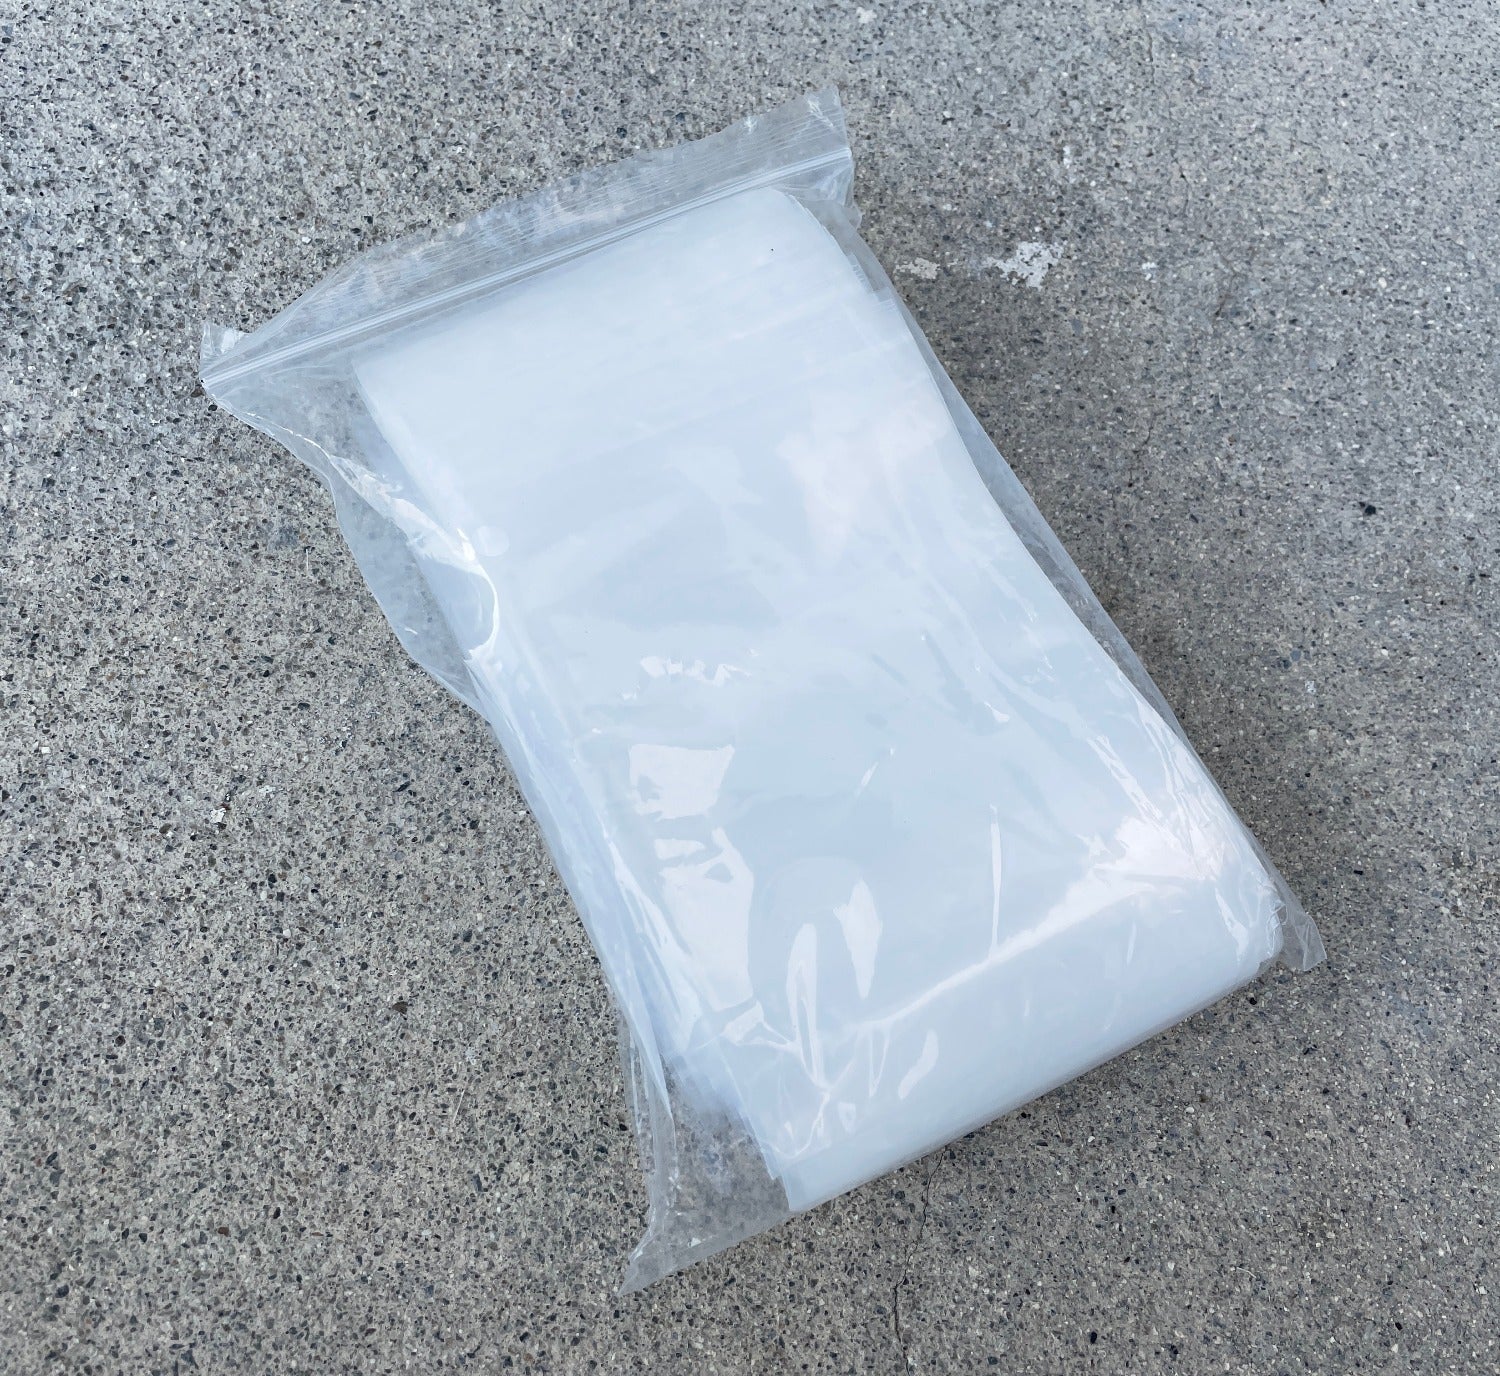 1 Gallon 10x12 2 Mil Heavy Duty Ziplock Bags (100/Pack)